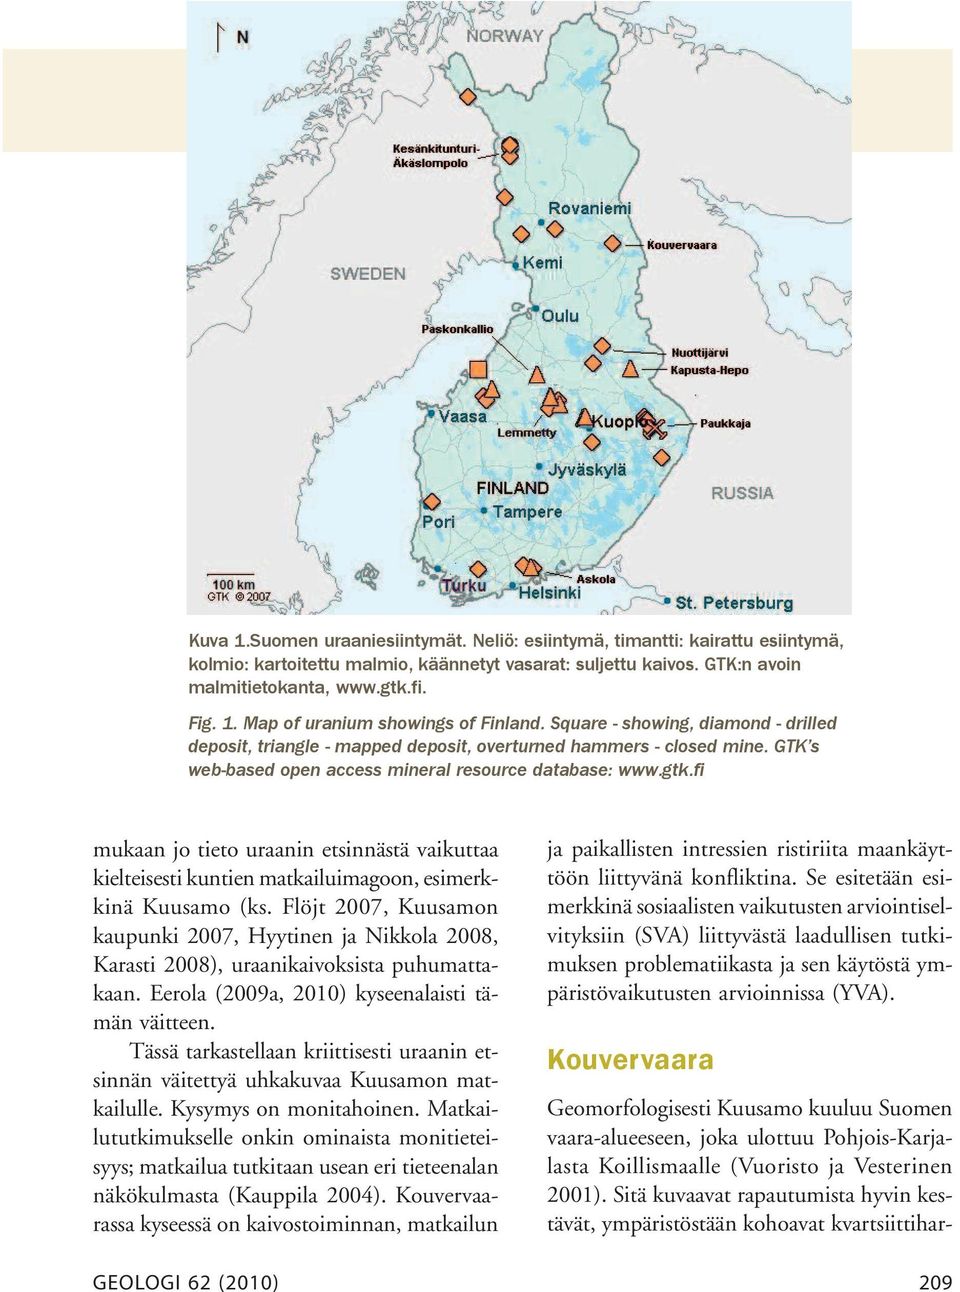 fi mukaan jo tieto uraanin etsinnästä vaikuttaa kielteisesti kuntien matkailuimagoon, esimerkkinä Kuusamo (ks.